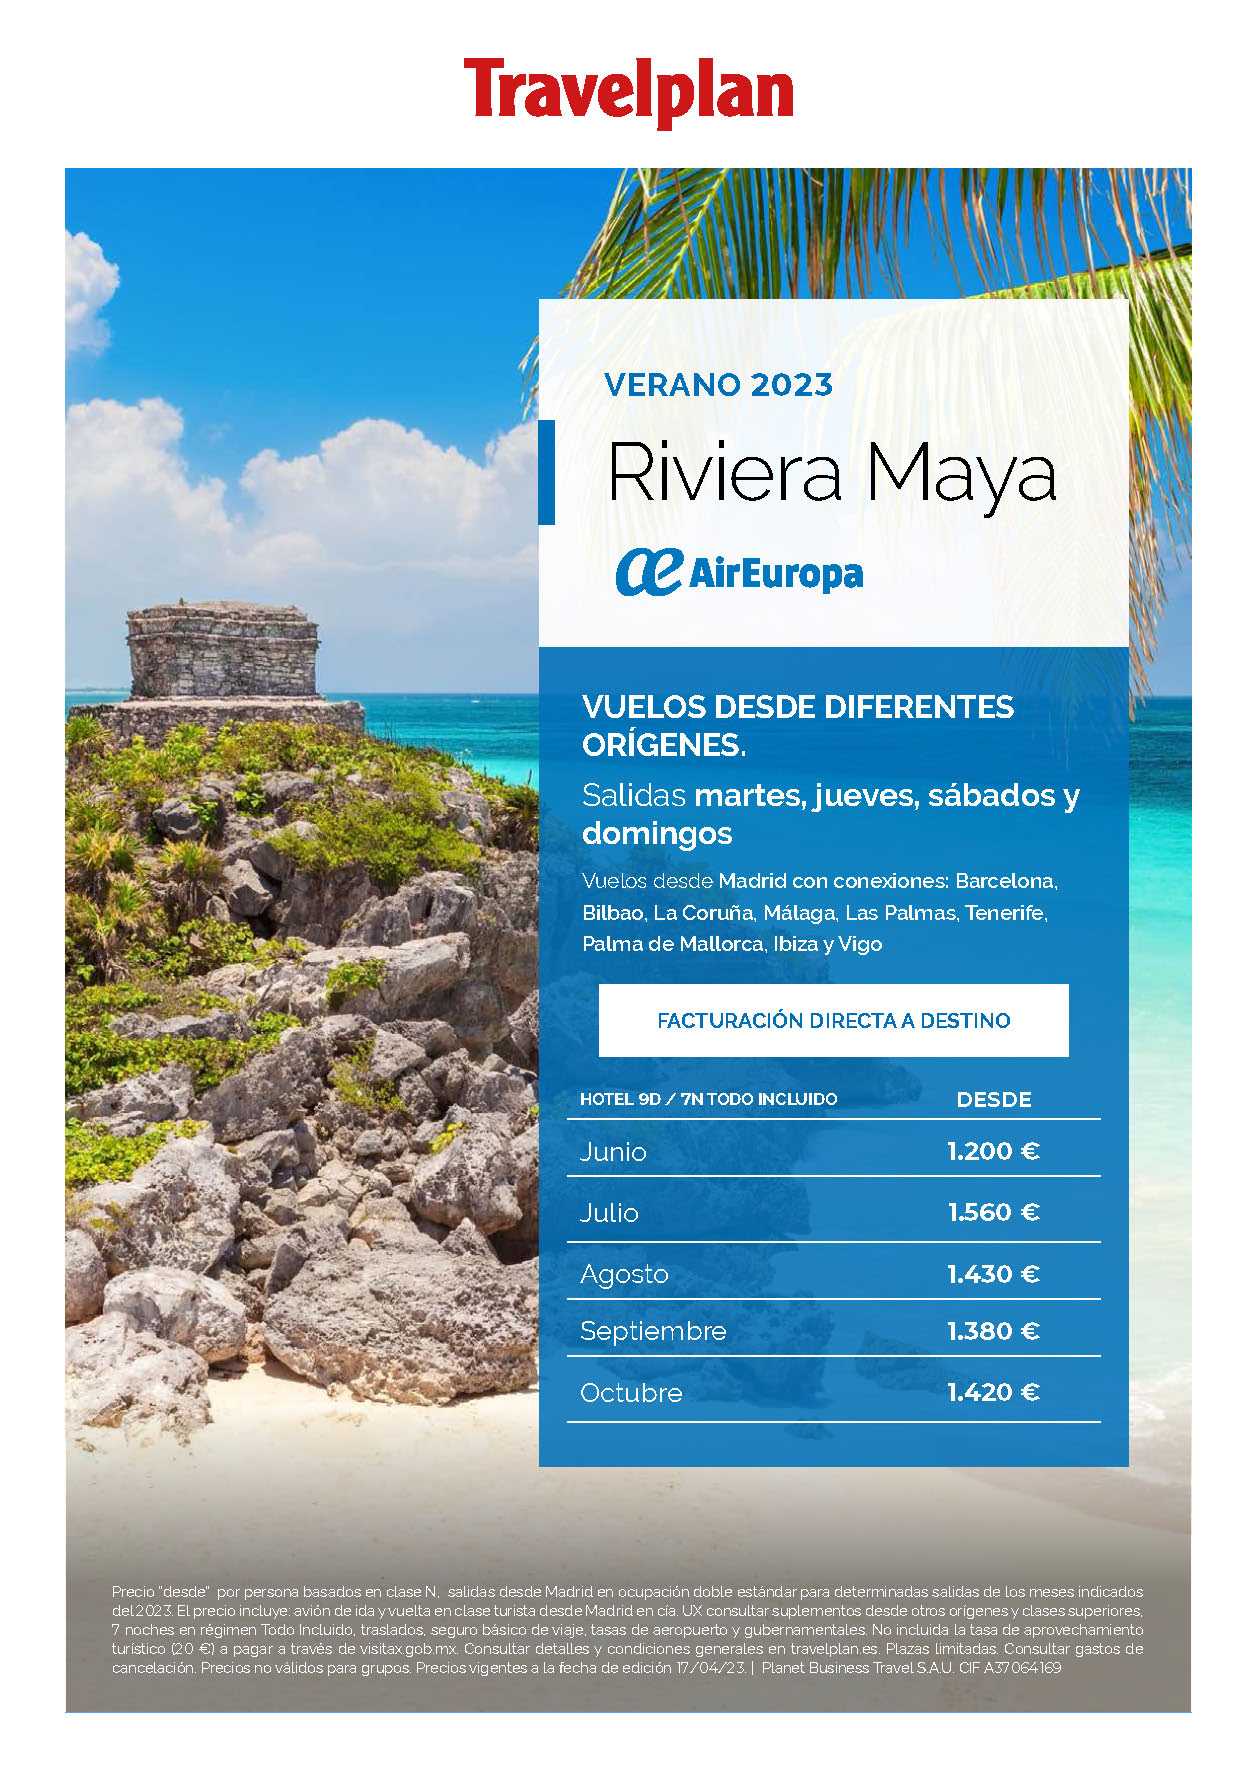 Oferta Travelplan Verano 2023 Riviera Maya Todo Incluido 9 dias salidas desde Madrid Barcelona Malaga Galicia Baleares Canarias